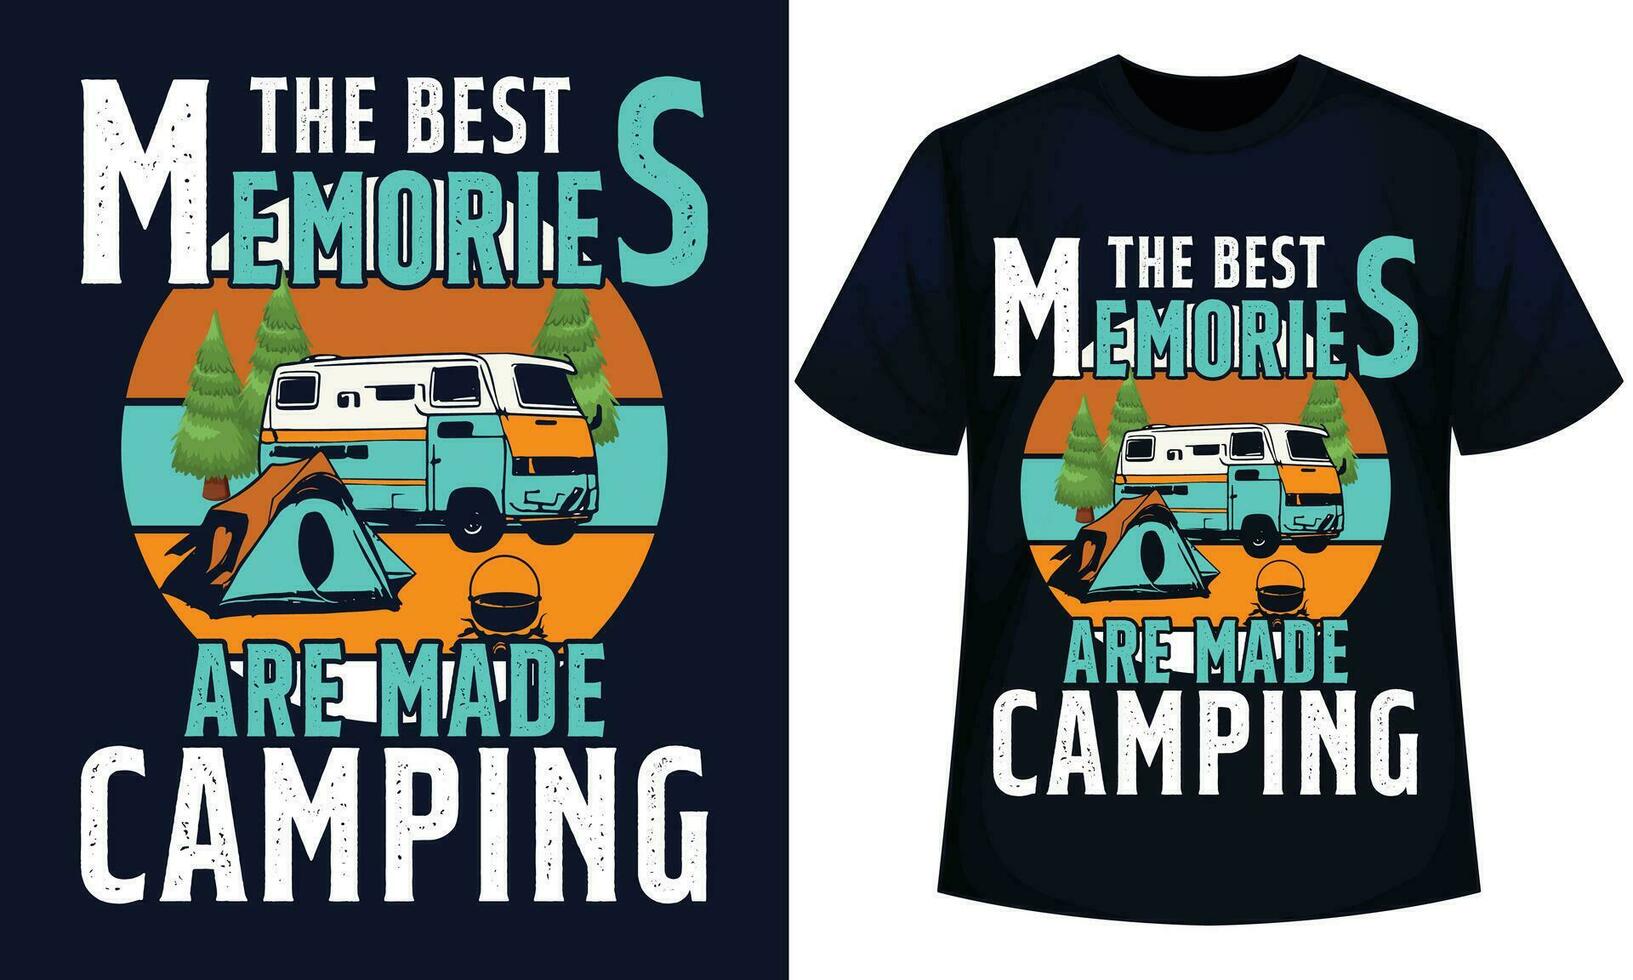 das Beste Erinnerungen sind gemacht Camping, Camping t Hemd Design vektor